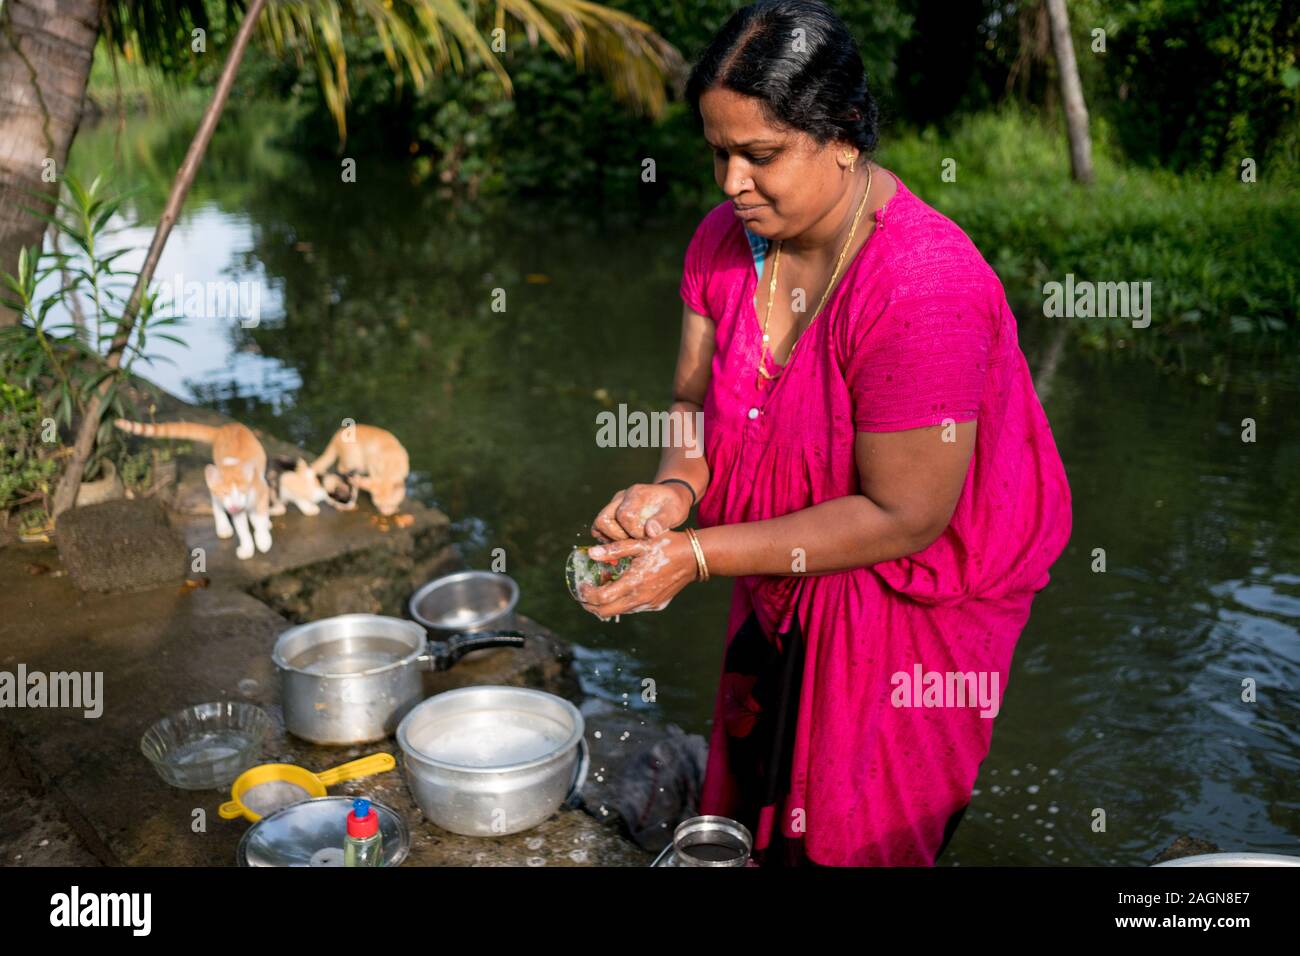 New Delhi, Indien - 22. September 2019: Nach der indischen Frau tun, tägliche Aufgaben im ländlichen Indien Abwasch durch den Fluss mit traditionellen bunten Sari ein Stockfoto